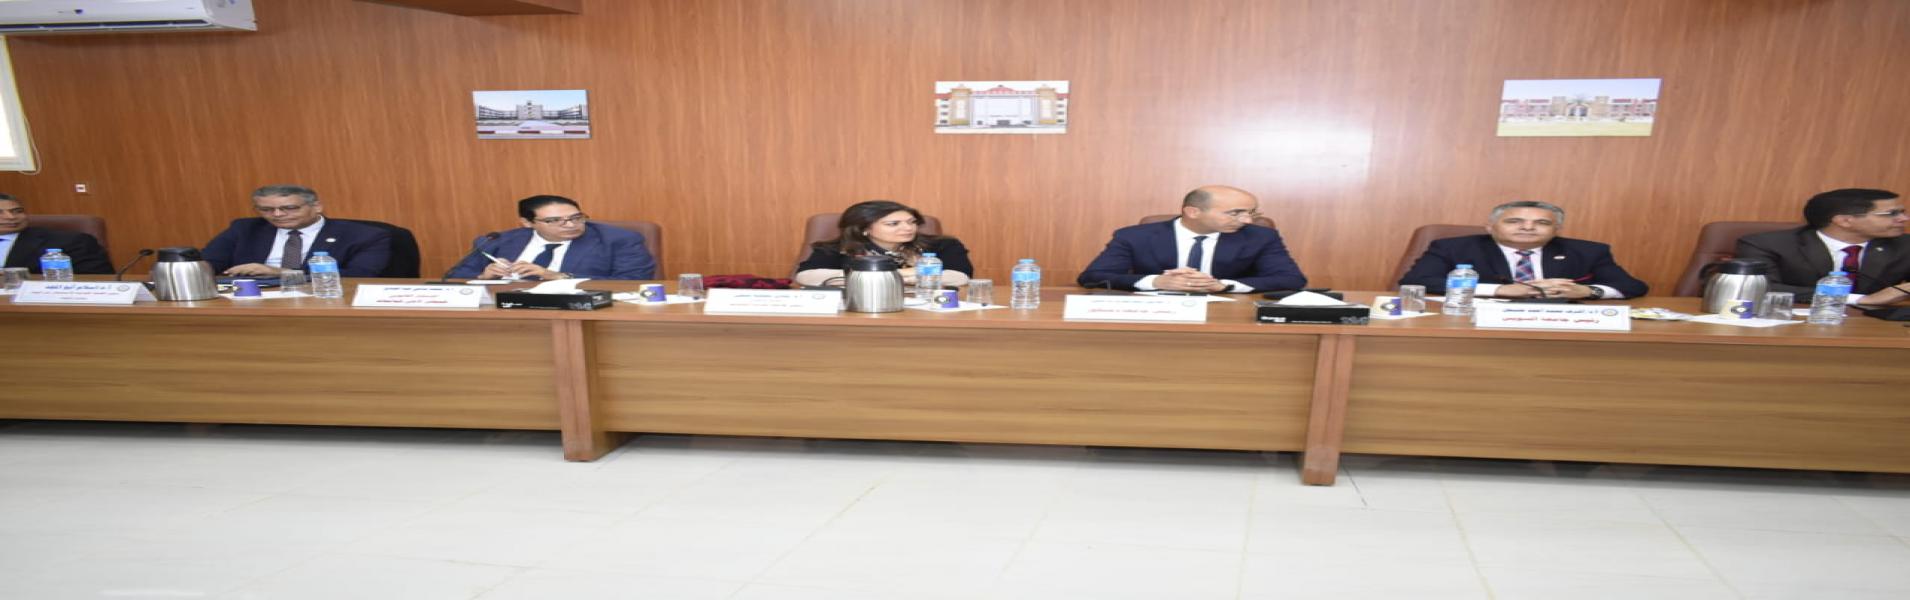 رئيس جامعة مدينة السادات تشارك في اجتماع المجلس الأعلى للجامعات بالوادي الجديد